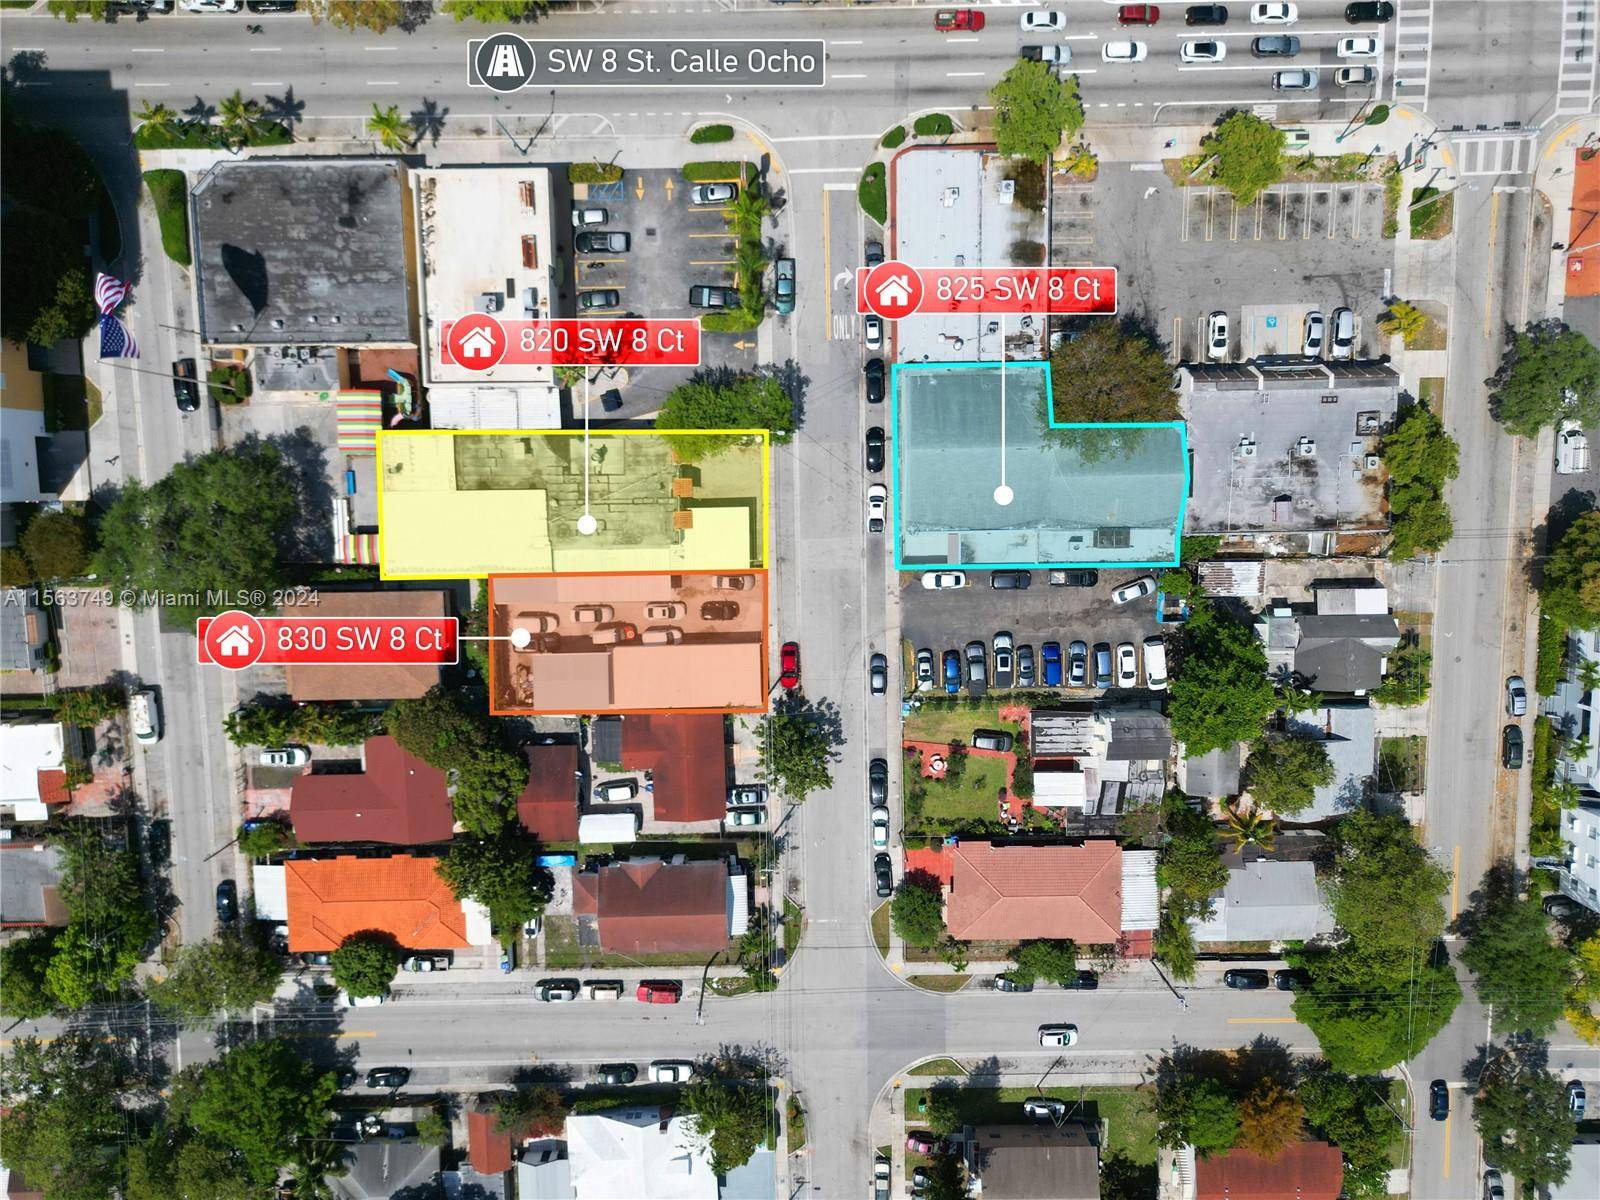 Discover a strategic 3 property portfolio near Miami's vibrant SW 8th Street, offering enticing development possibilities.